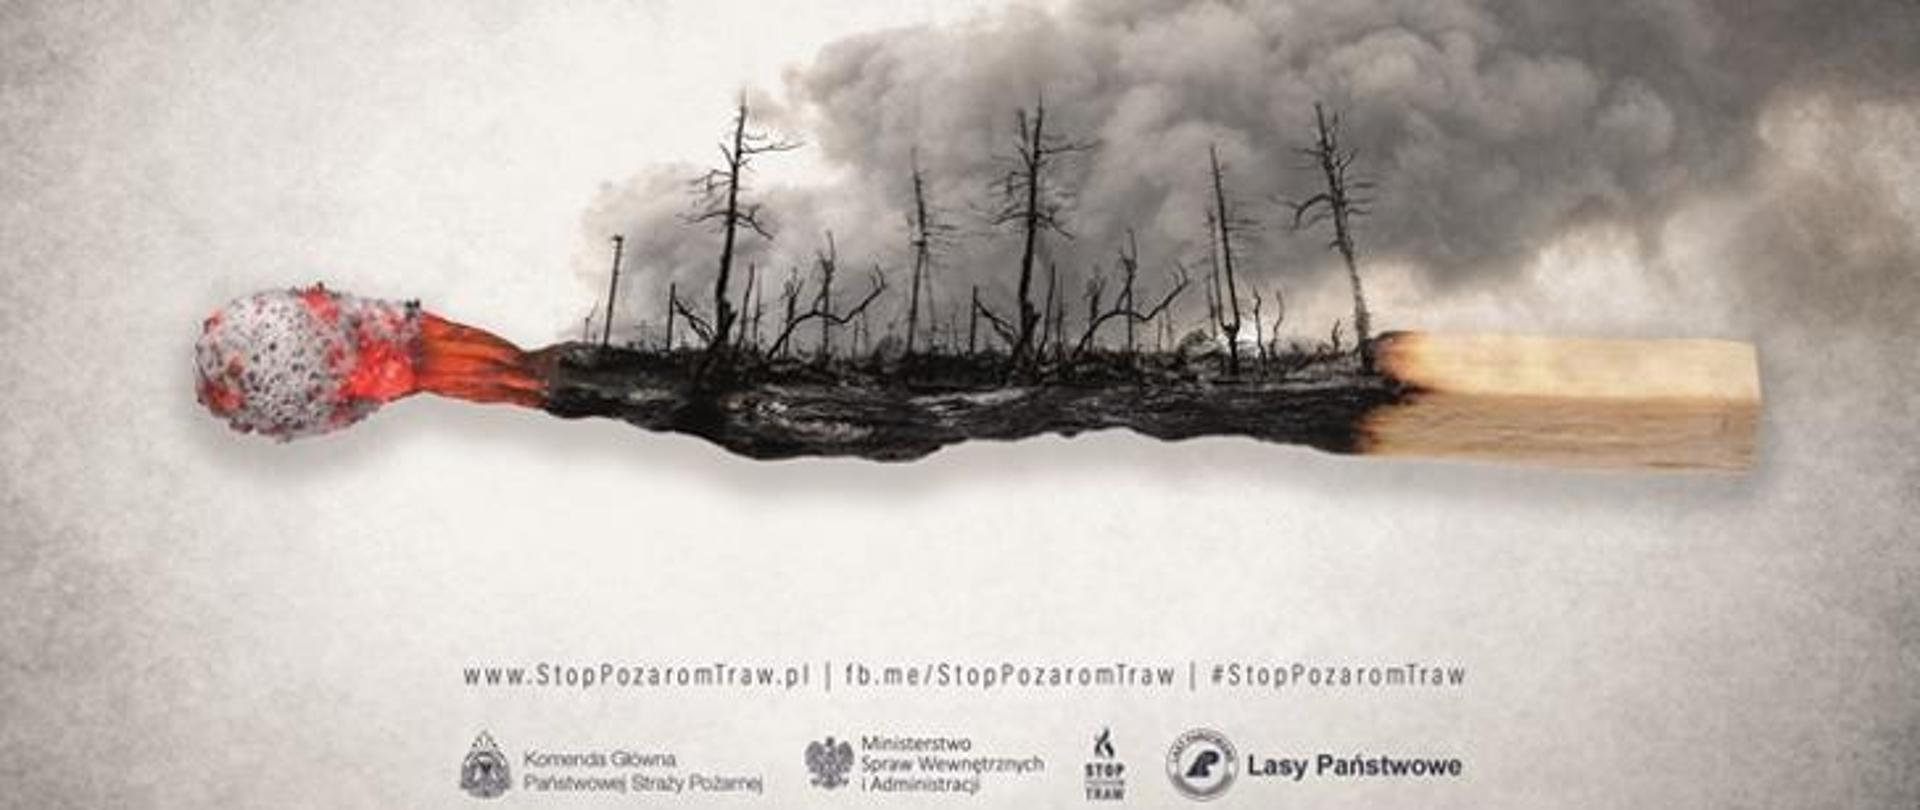 Stop Pożarom Traw - kampania informacyjna